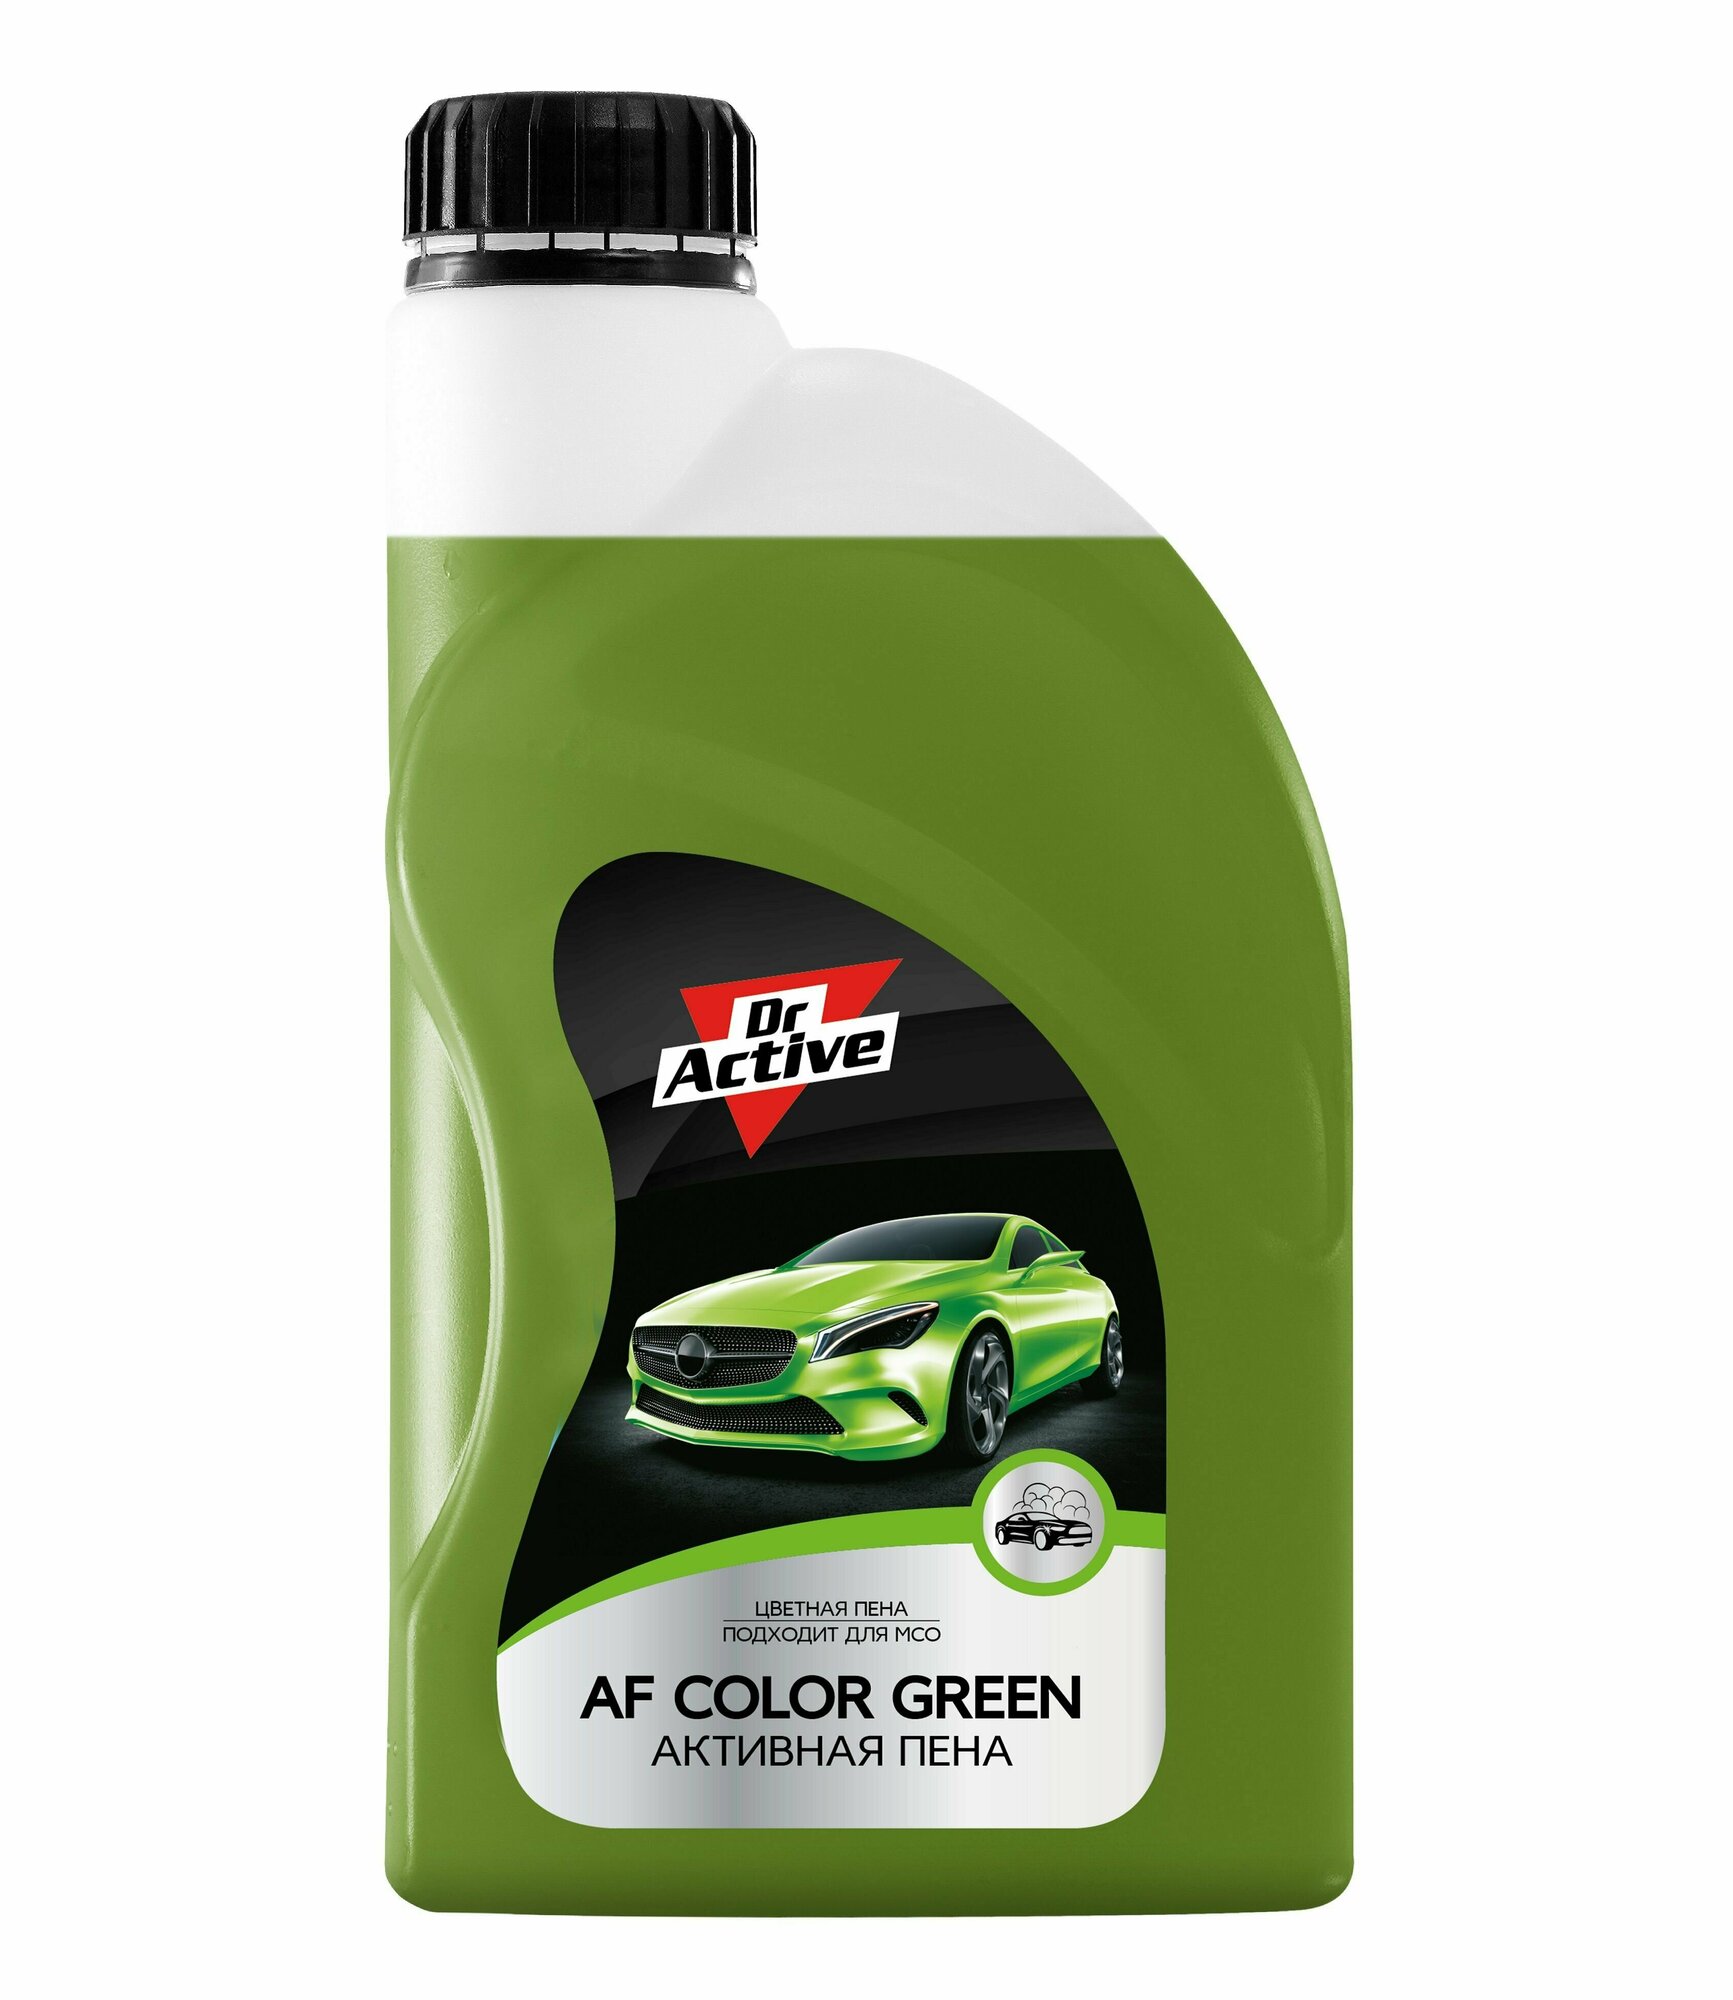 Автошампунь для бесконтактной мойки автомобиля Dr. Active "AF Color Green" концентрат 1 л активная пена